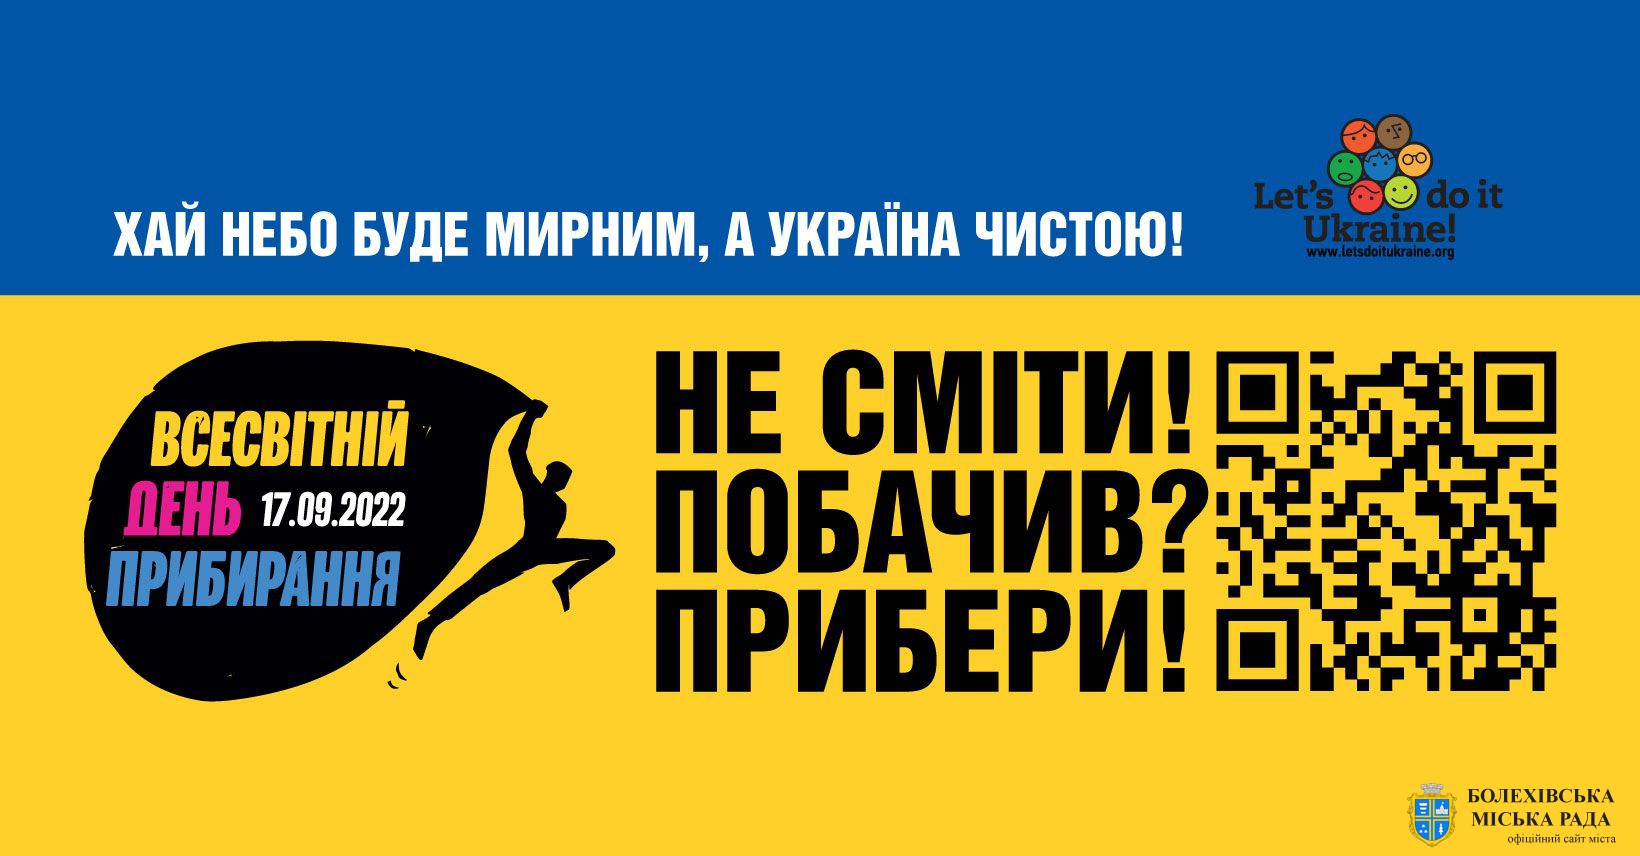 Українці традиційно приєднаються до Всесвітнього дня прибирання “World Cleanup Day”